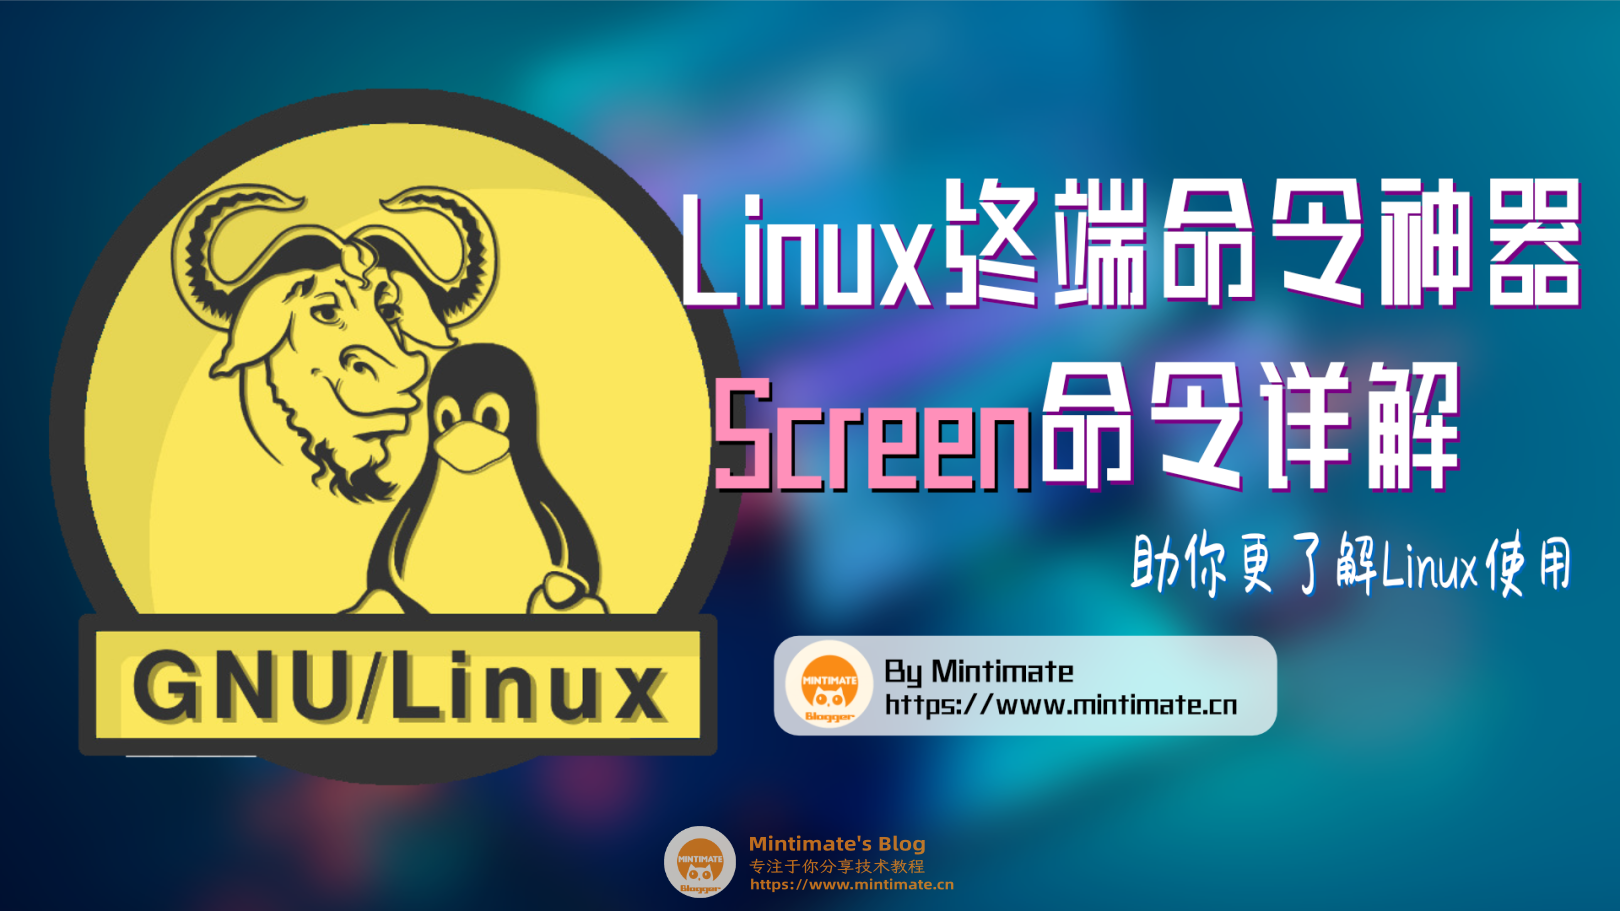 终端命令神器--Screen命令详解。助力Unix/Linux使用和管理